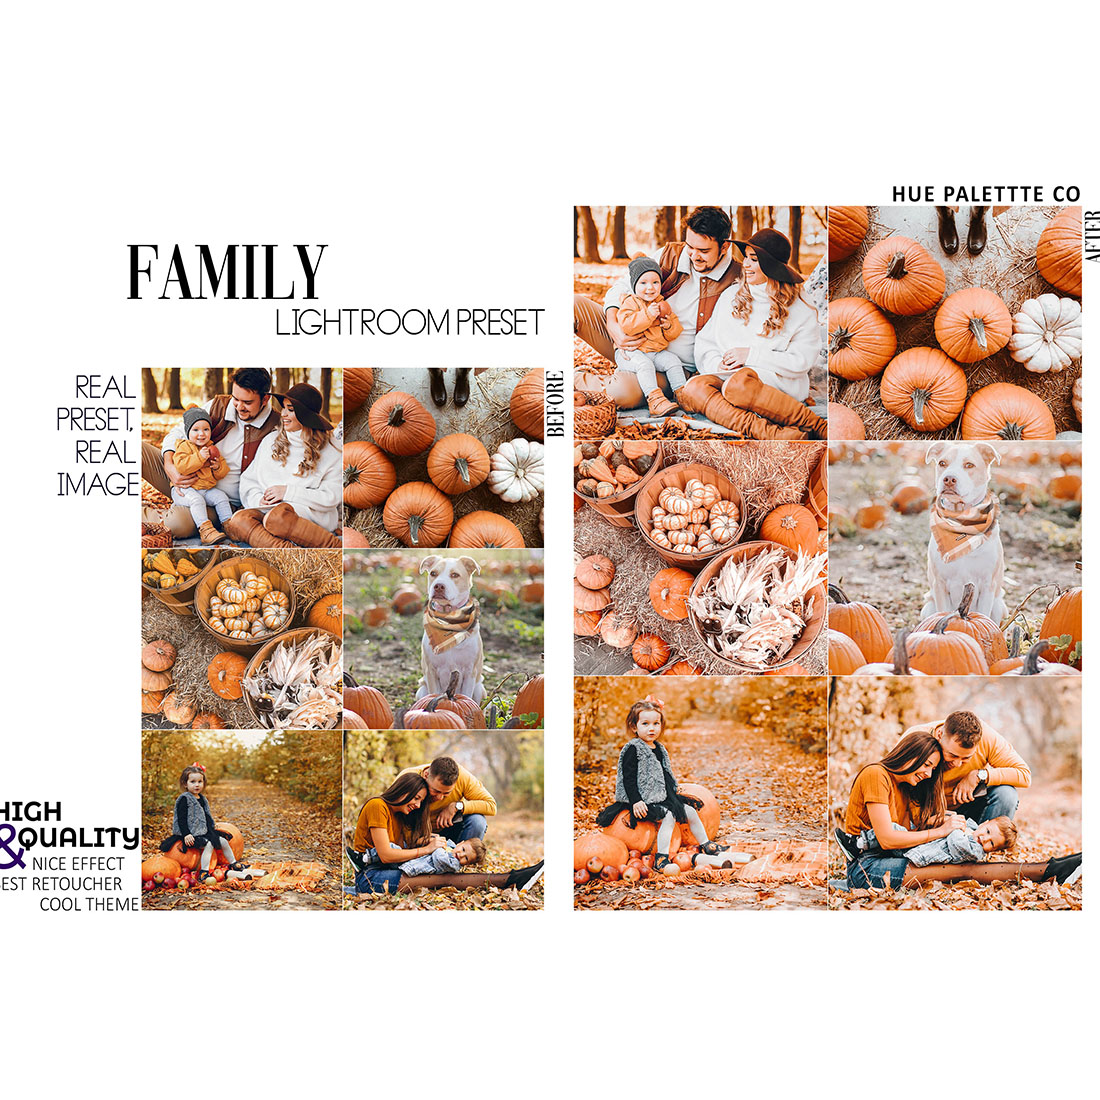 12 September 2021 Lightroom Presets, Pumpkin Mobile Preset, Autumn Desktop, Lifestyle Portrait Theme Instagram LR Filter DNG Orange Fall preview image.